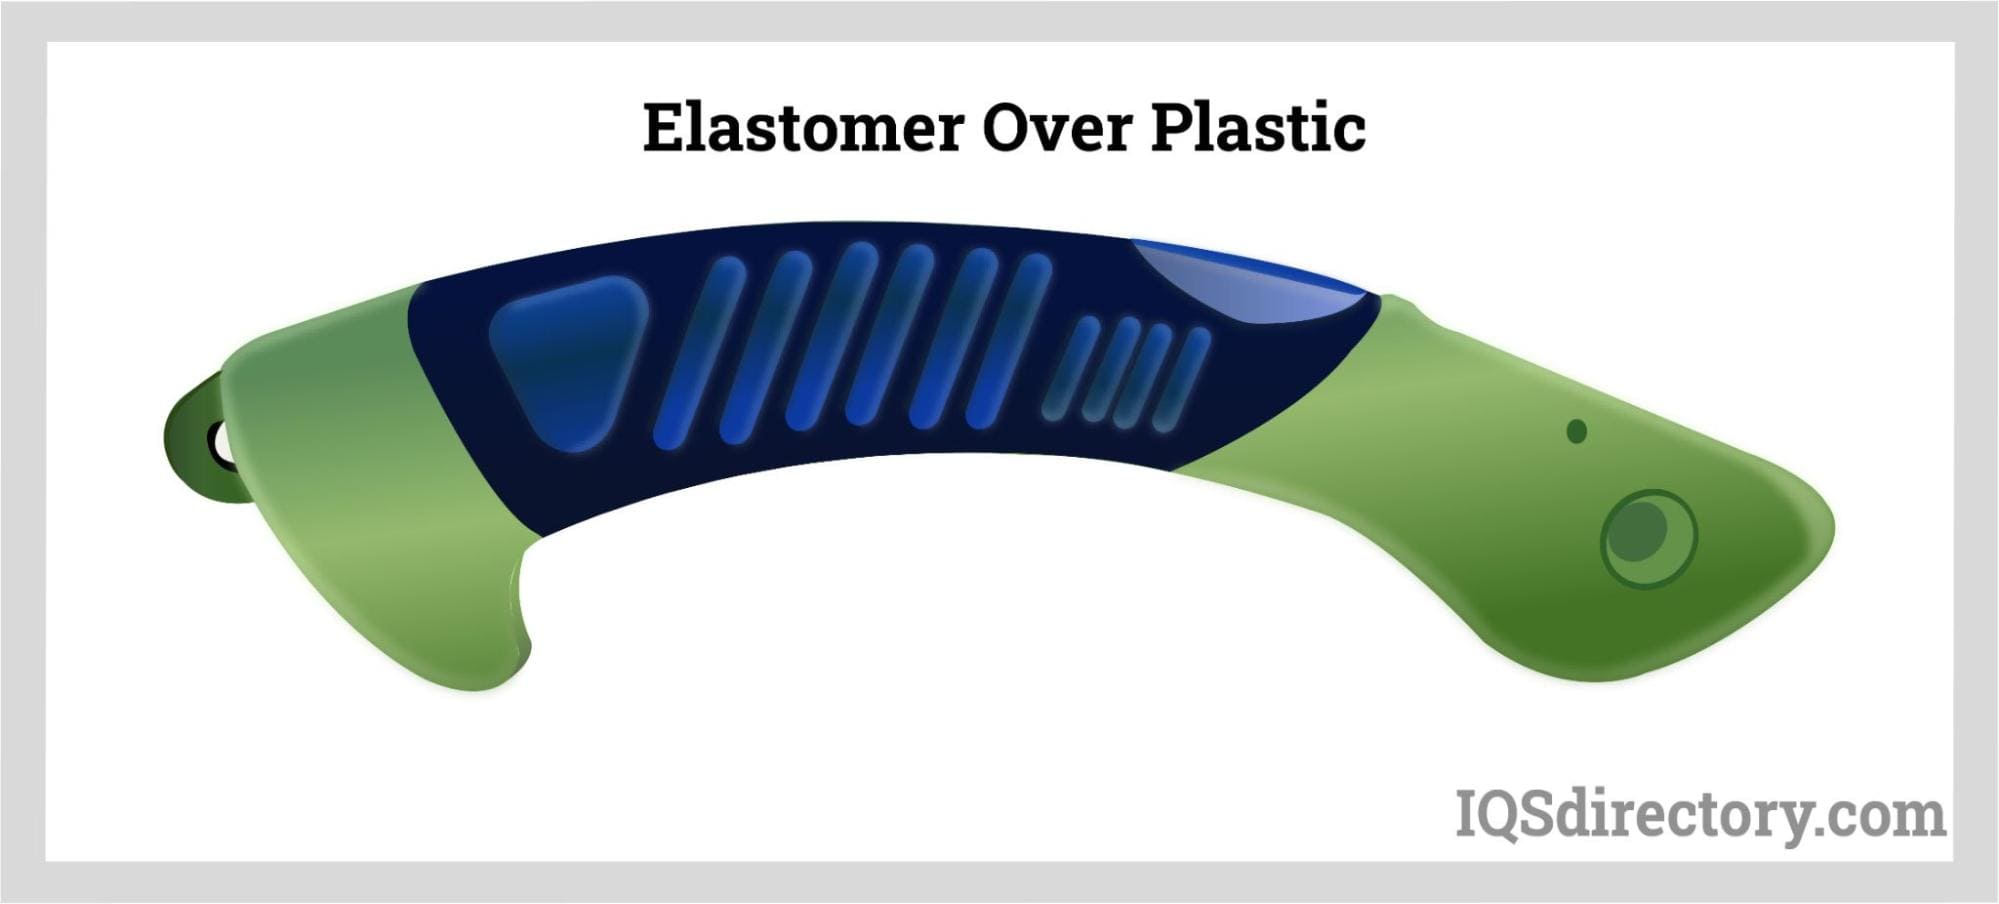 Elastomer Over Plastic